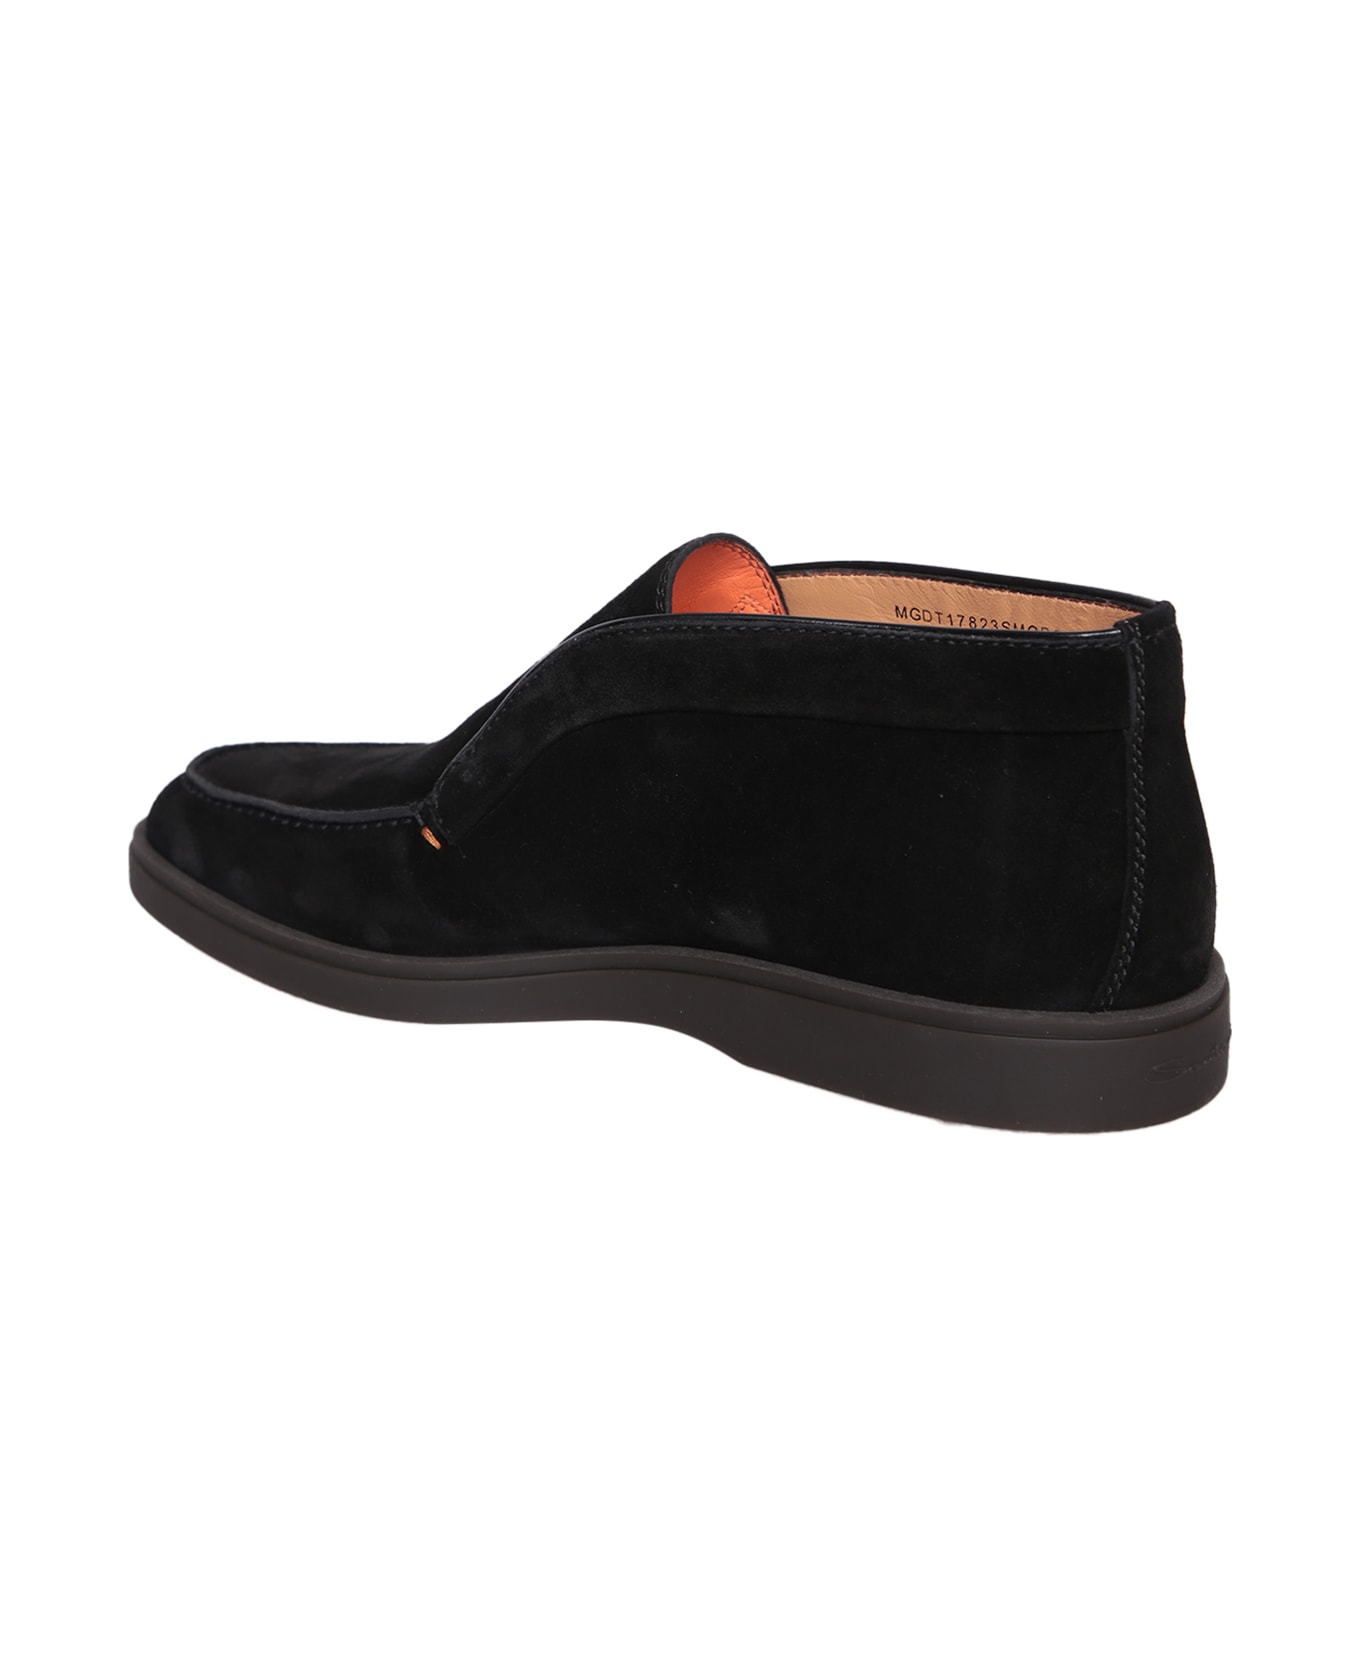 Santoni Suede Black Ankle Boots - Black